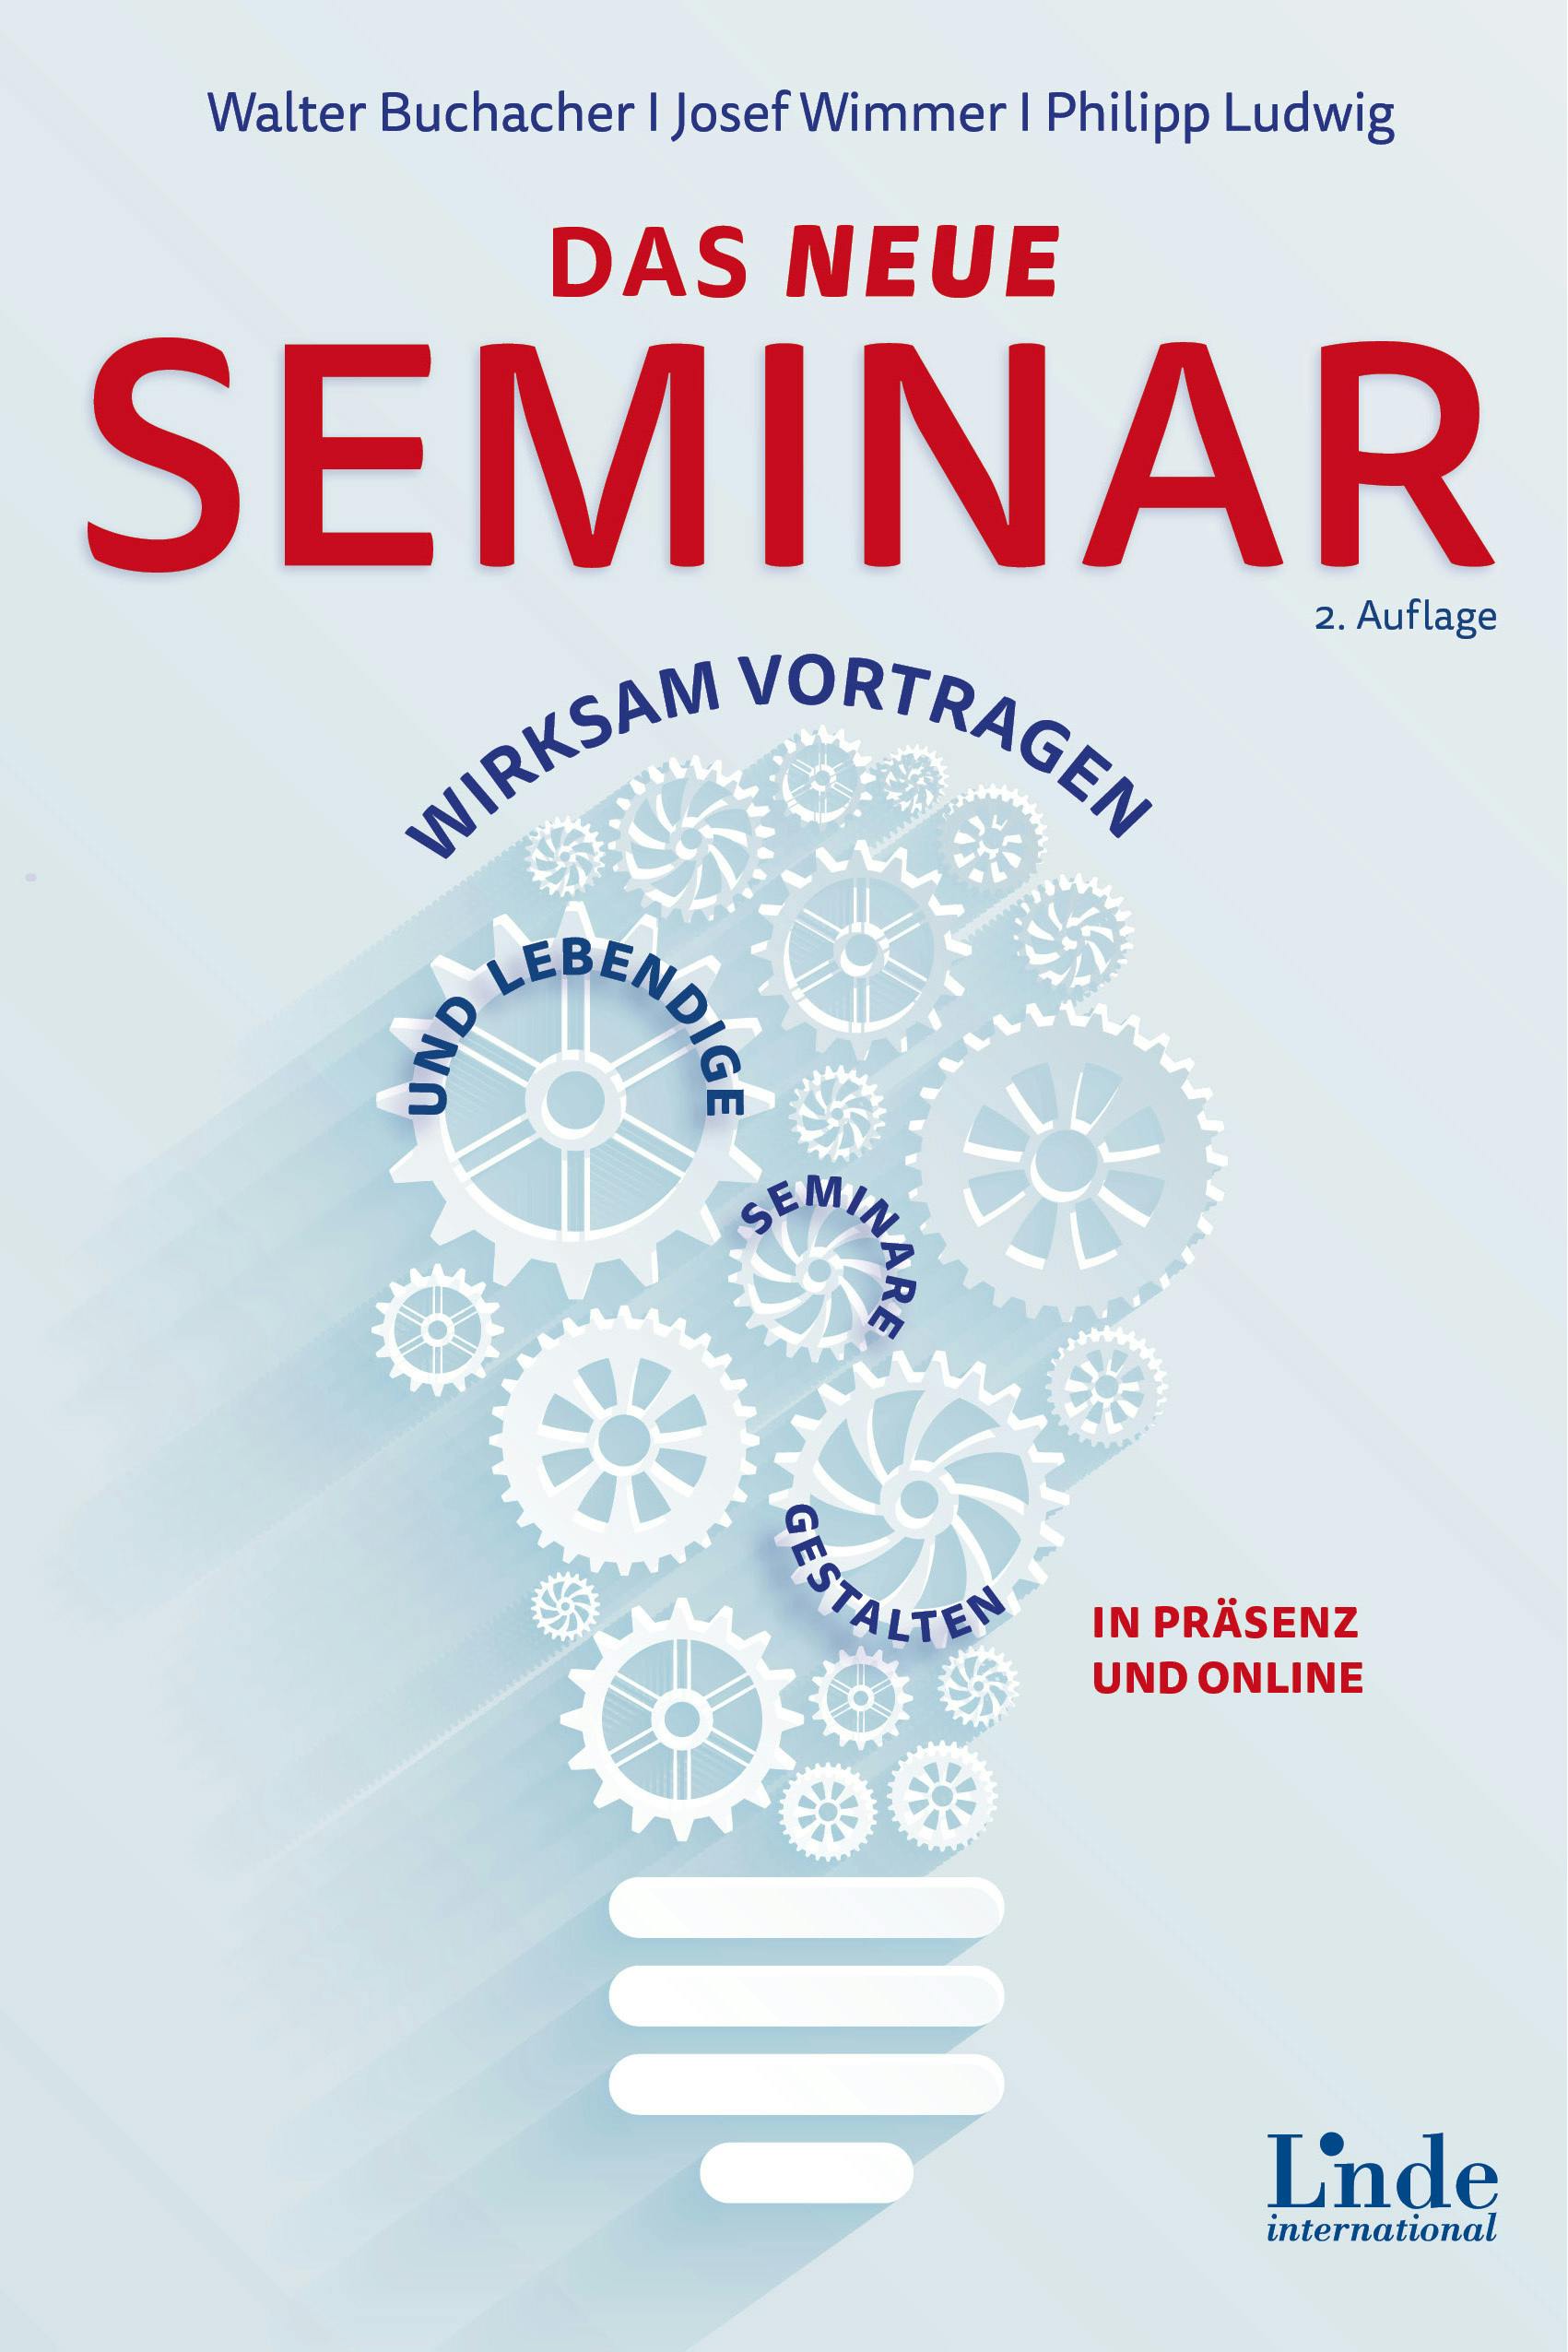 Buchacher | Wimmer | Ludwig
Das neue Seminar
Wirksam vortragen und lebendige Seminare gestalten in Präsenz und online